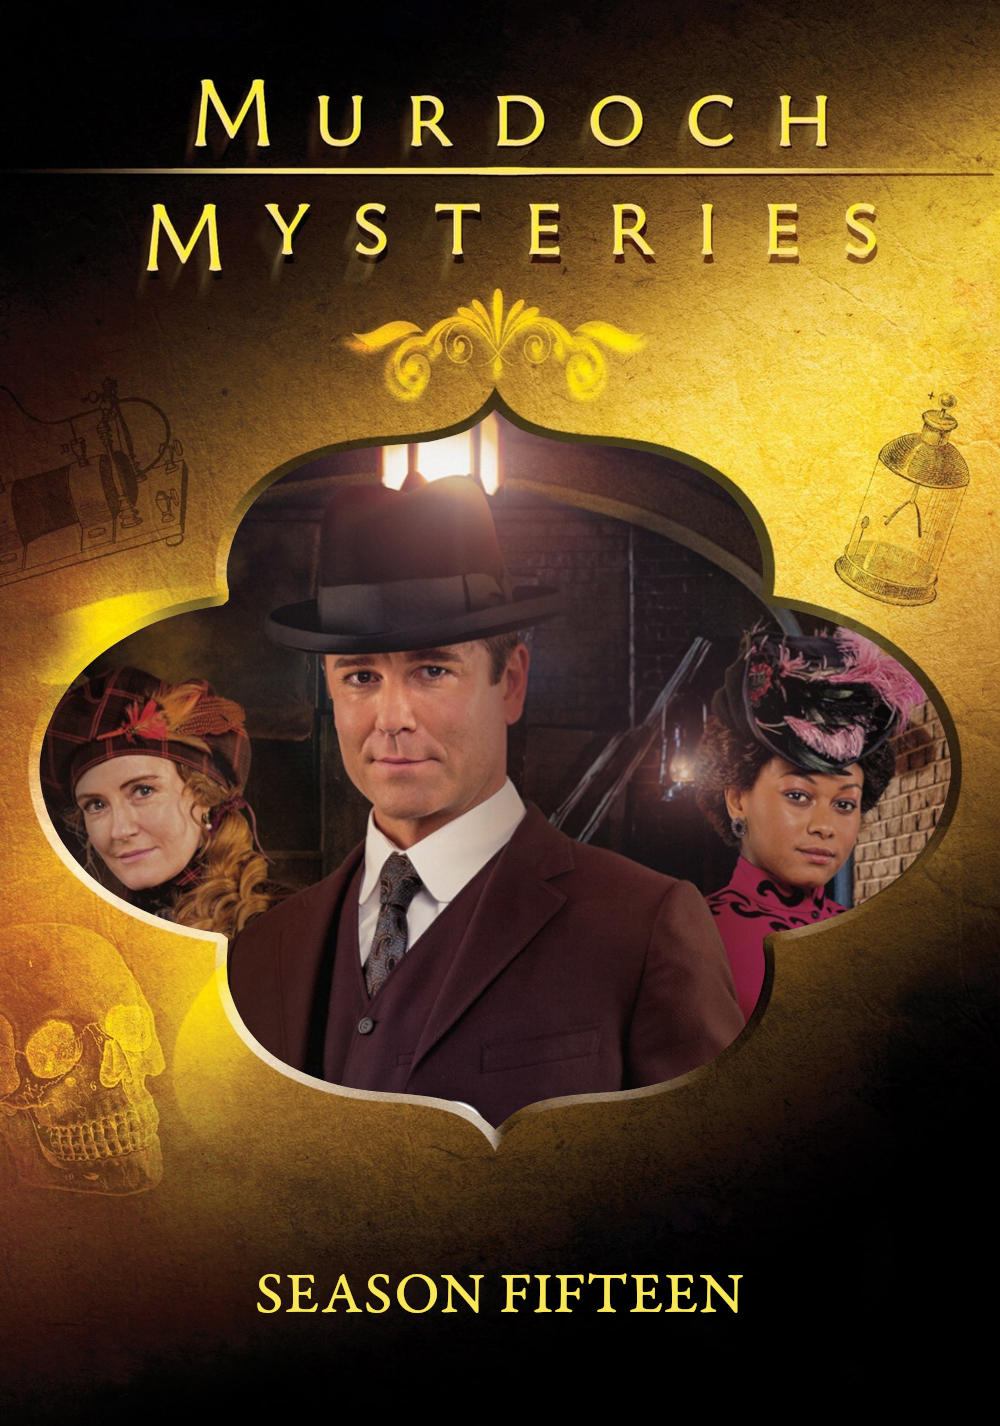 Murdoch Mysteries (2008) S15pt2 E09->E16 NLsubs